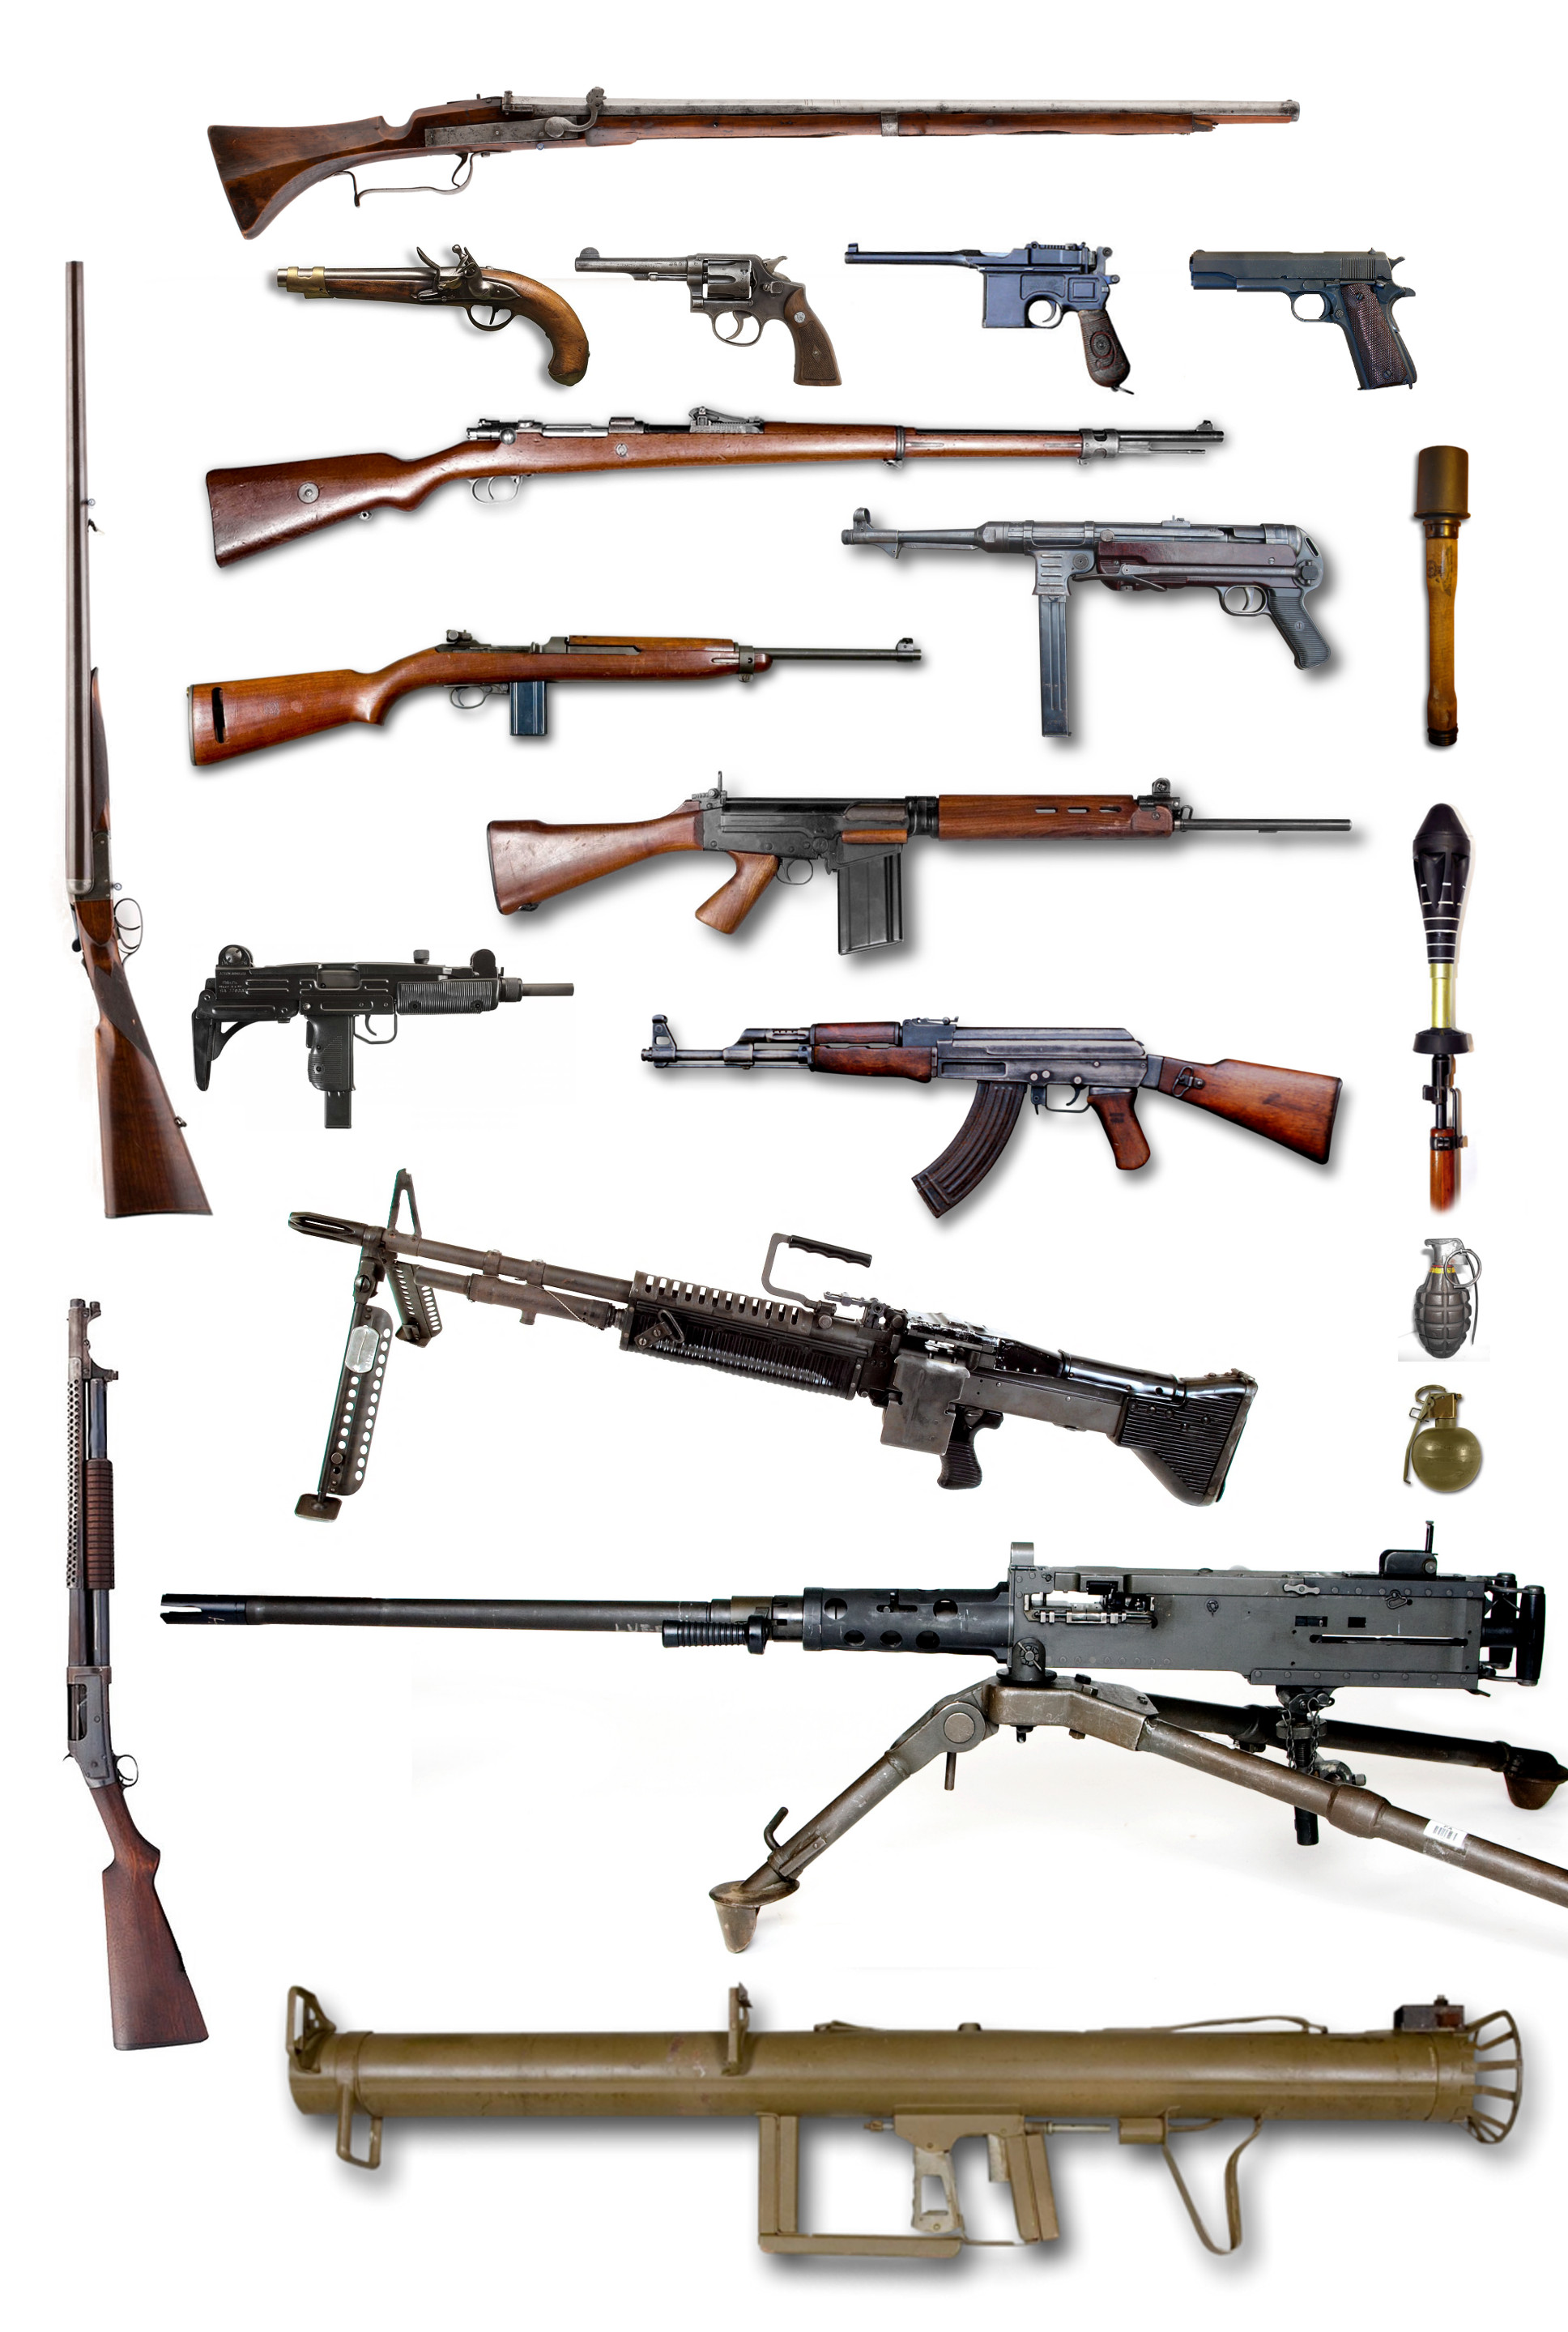 Arma de fogo – Wikipédia, a enciclopédia livre